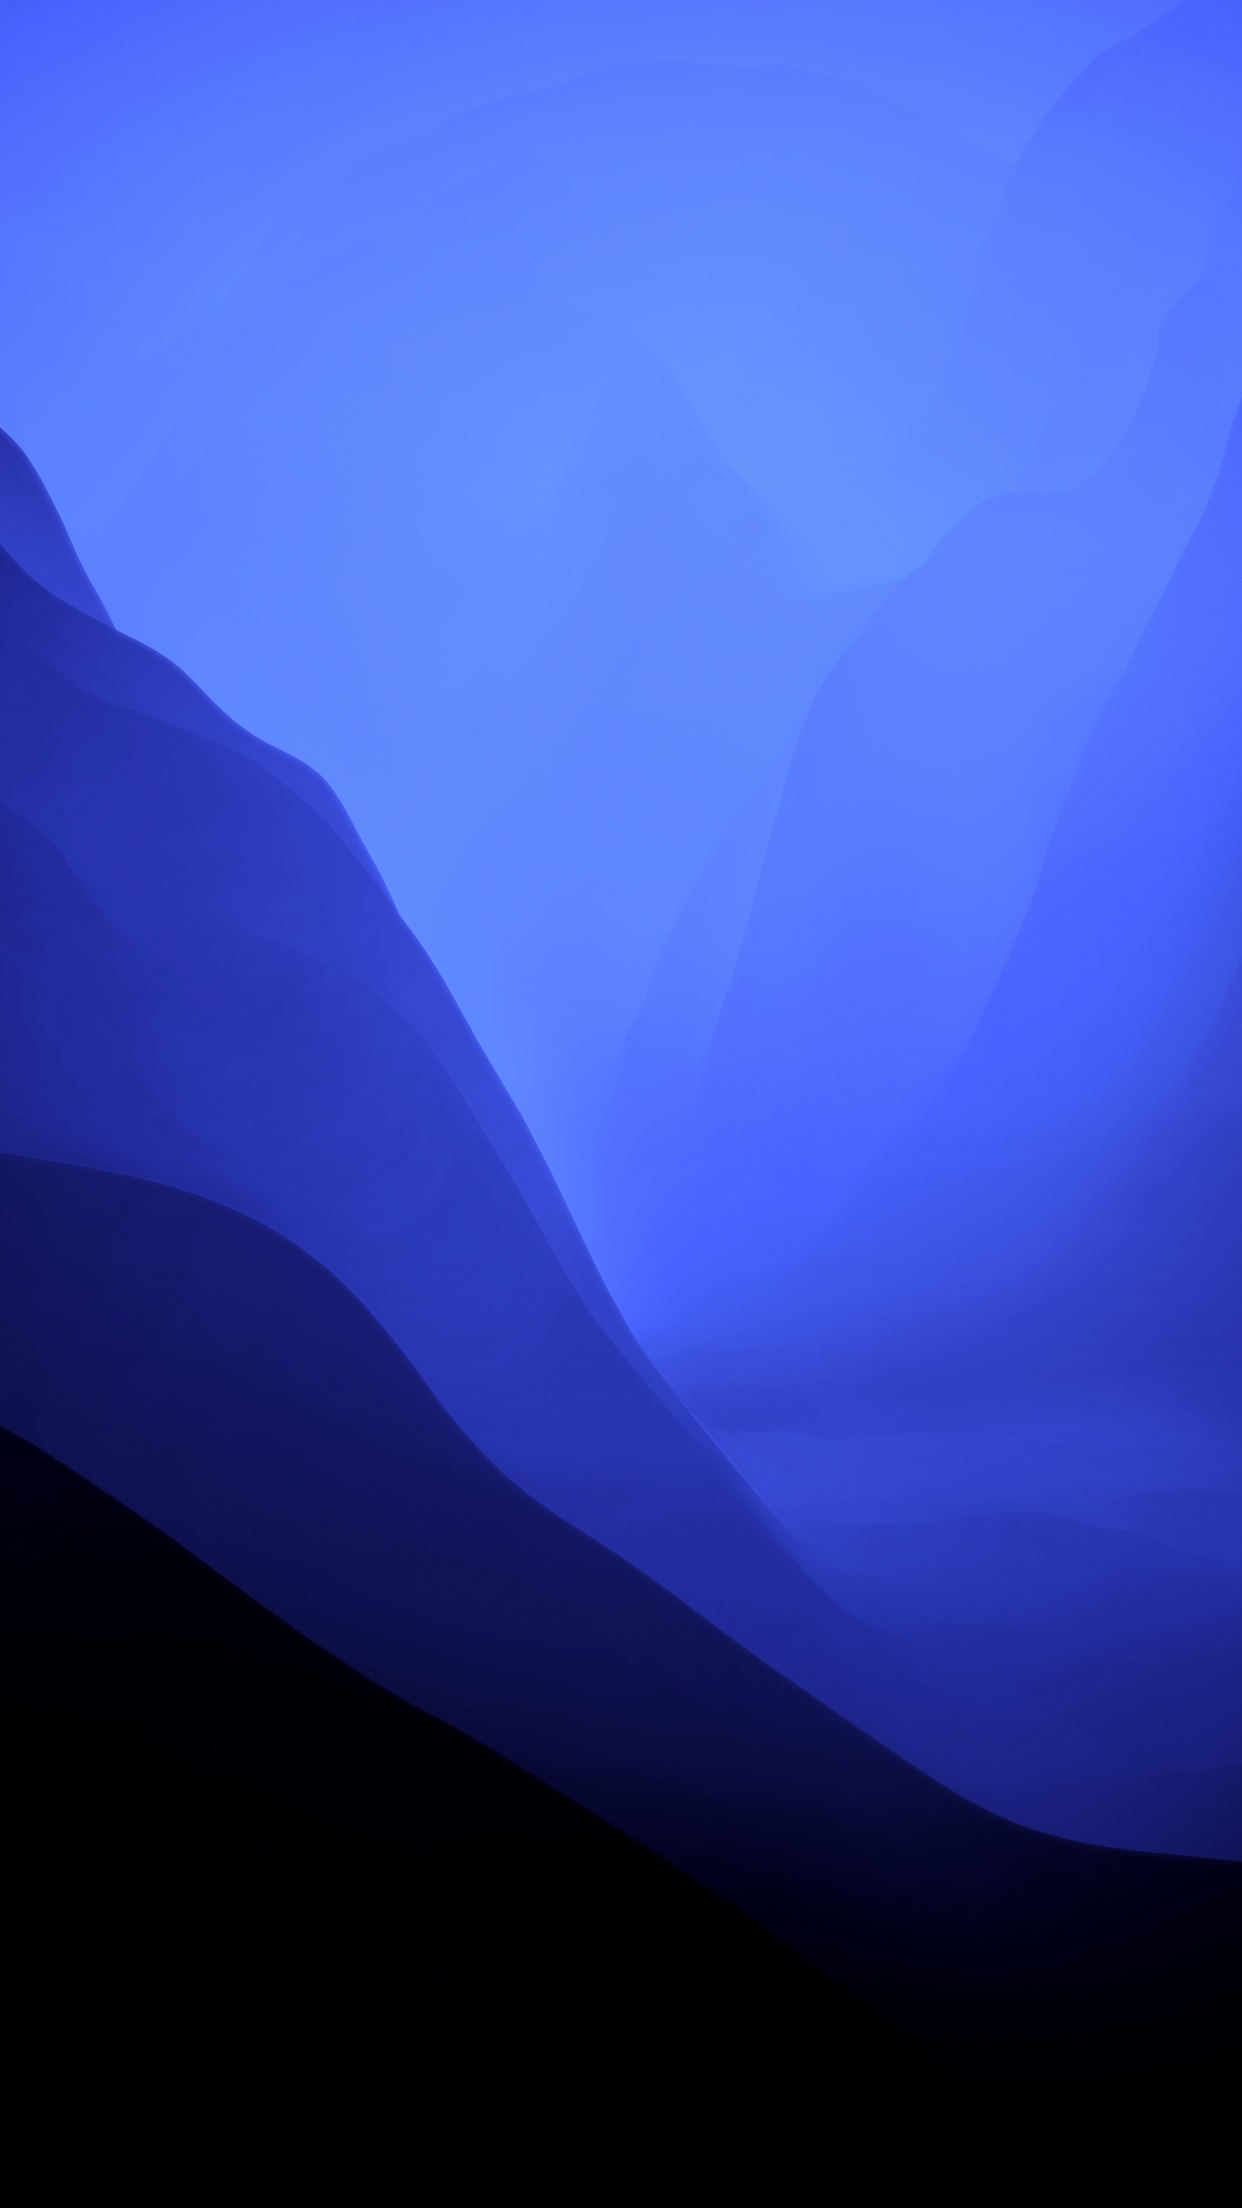 Hình nền macOS Monterey màu xanh đen 4K với thiết kế tinh tế và độ phân giải cực cao là một trong những lựa chọn tuyệt vời để trang trí cho máy tính của bạn. Với sự kết hợp hoàn hảo giữa màu xanh đen và kinh điển của macOS, hình nền này sẽ khiến cho màn hình của bạn trở nên cuốn hút hơn bao giờ hết.